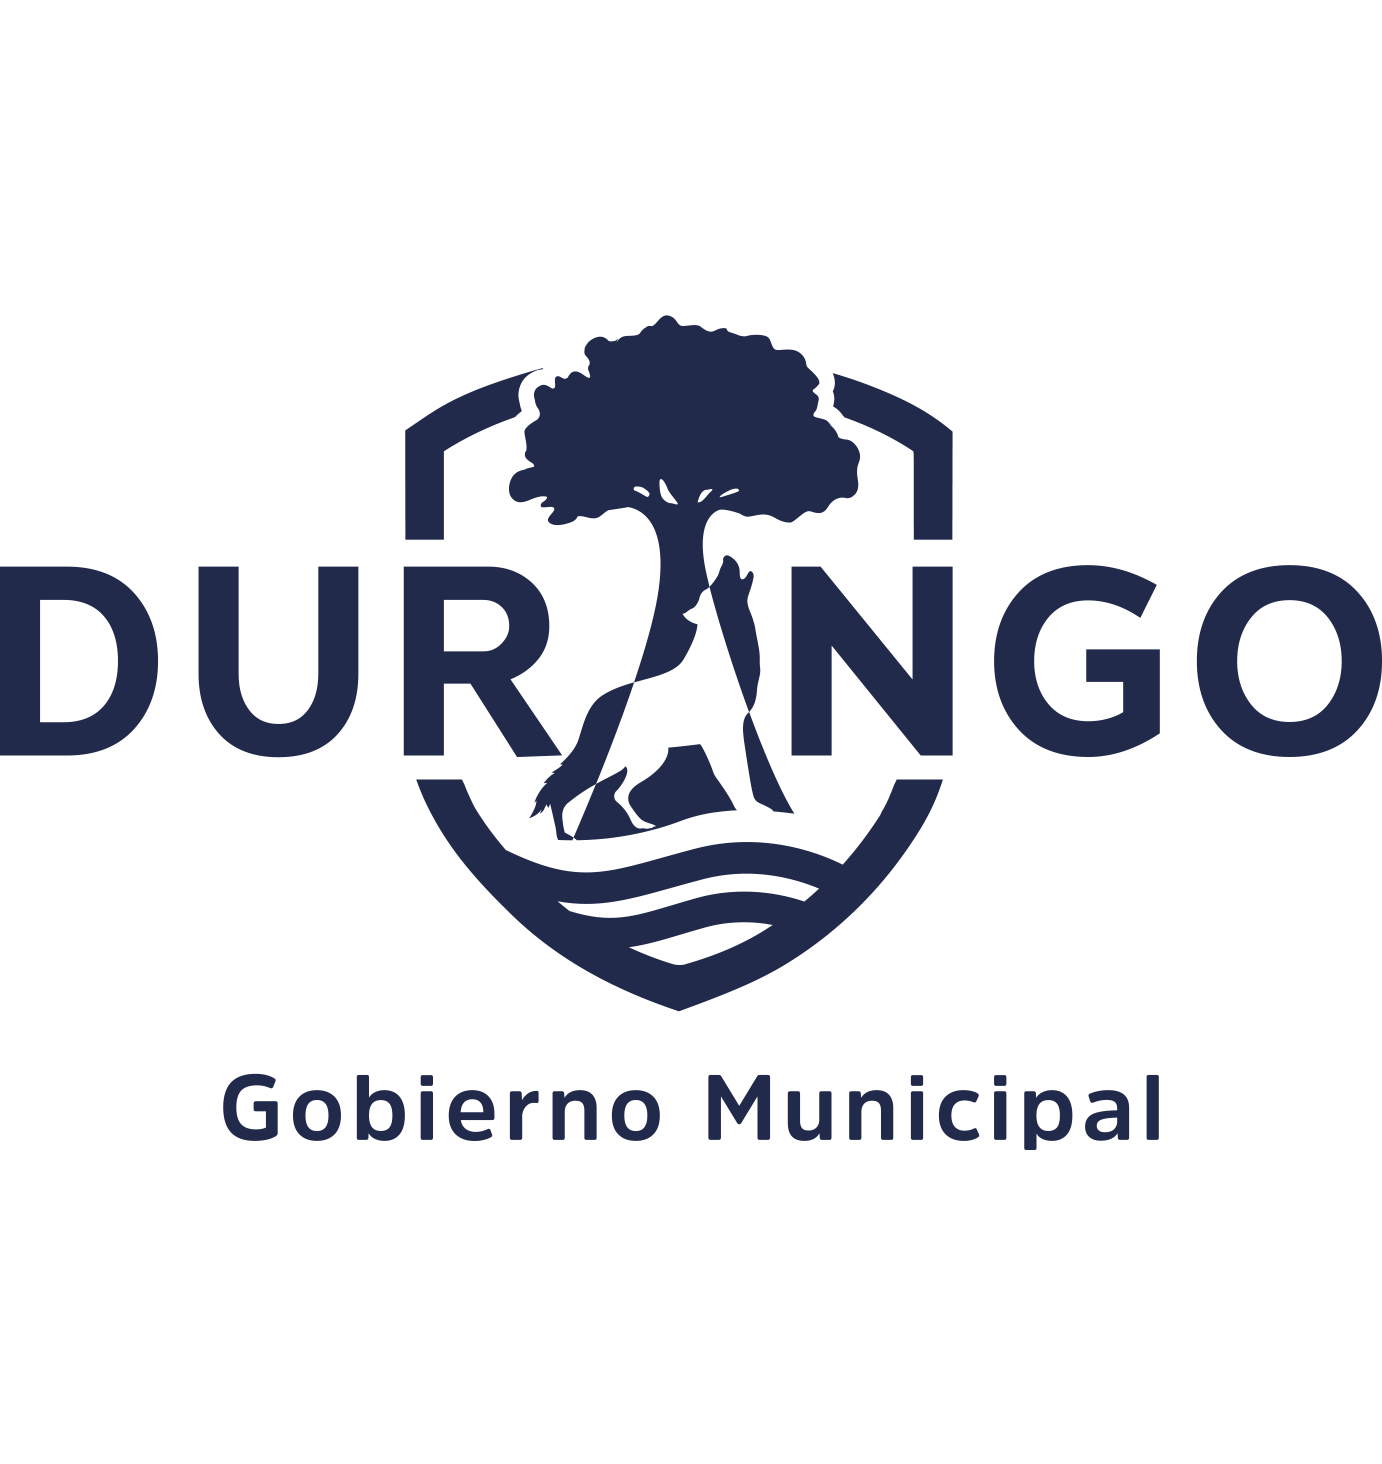 Ayuntamiento de Durango